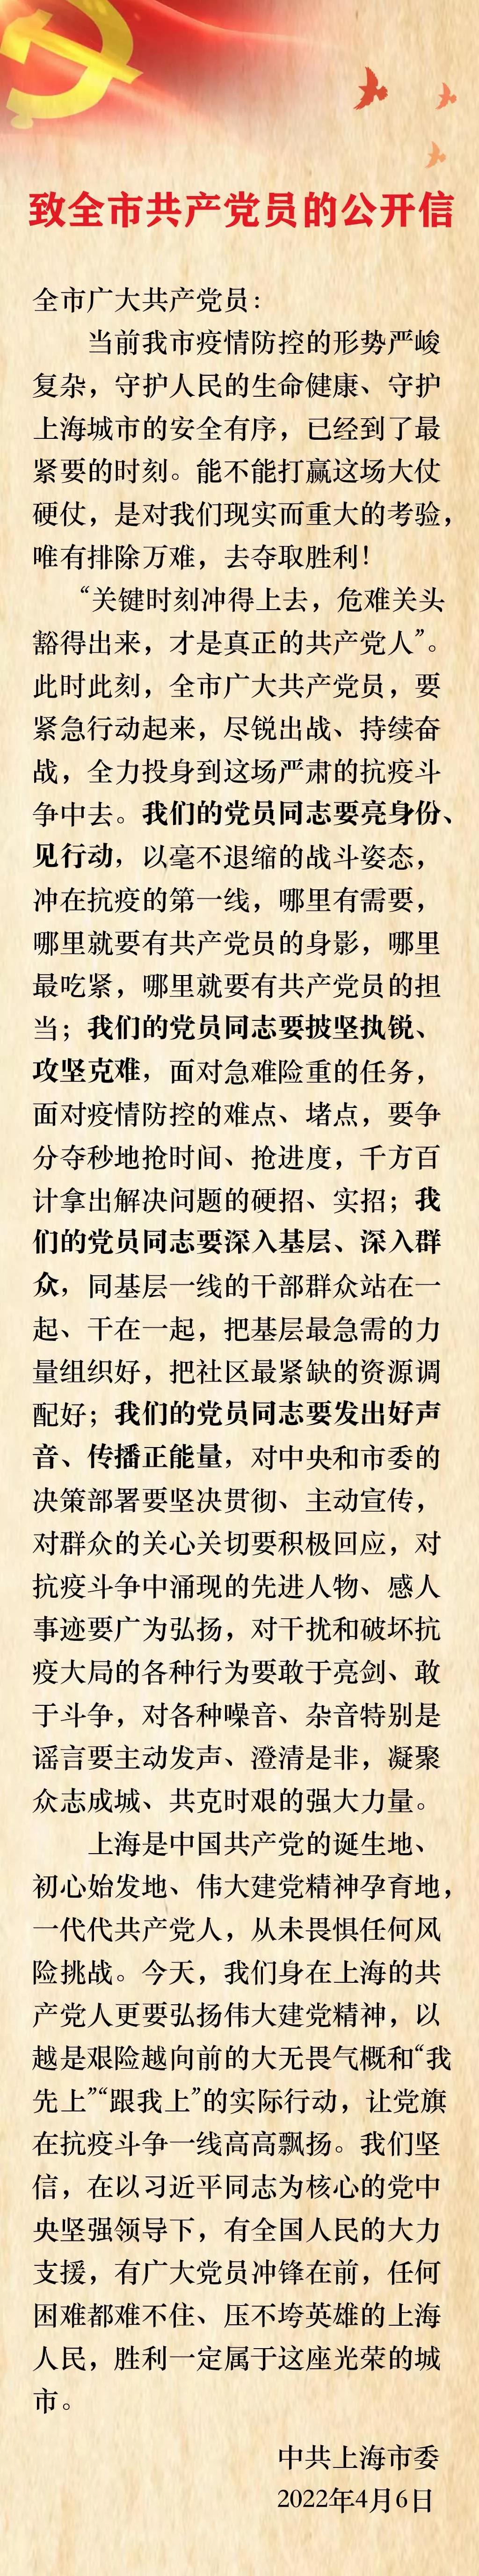 中共上海市委发布《致全市共产党员的公开信》